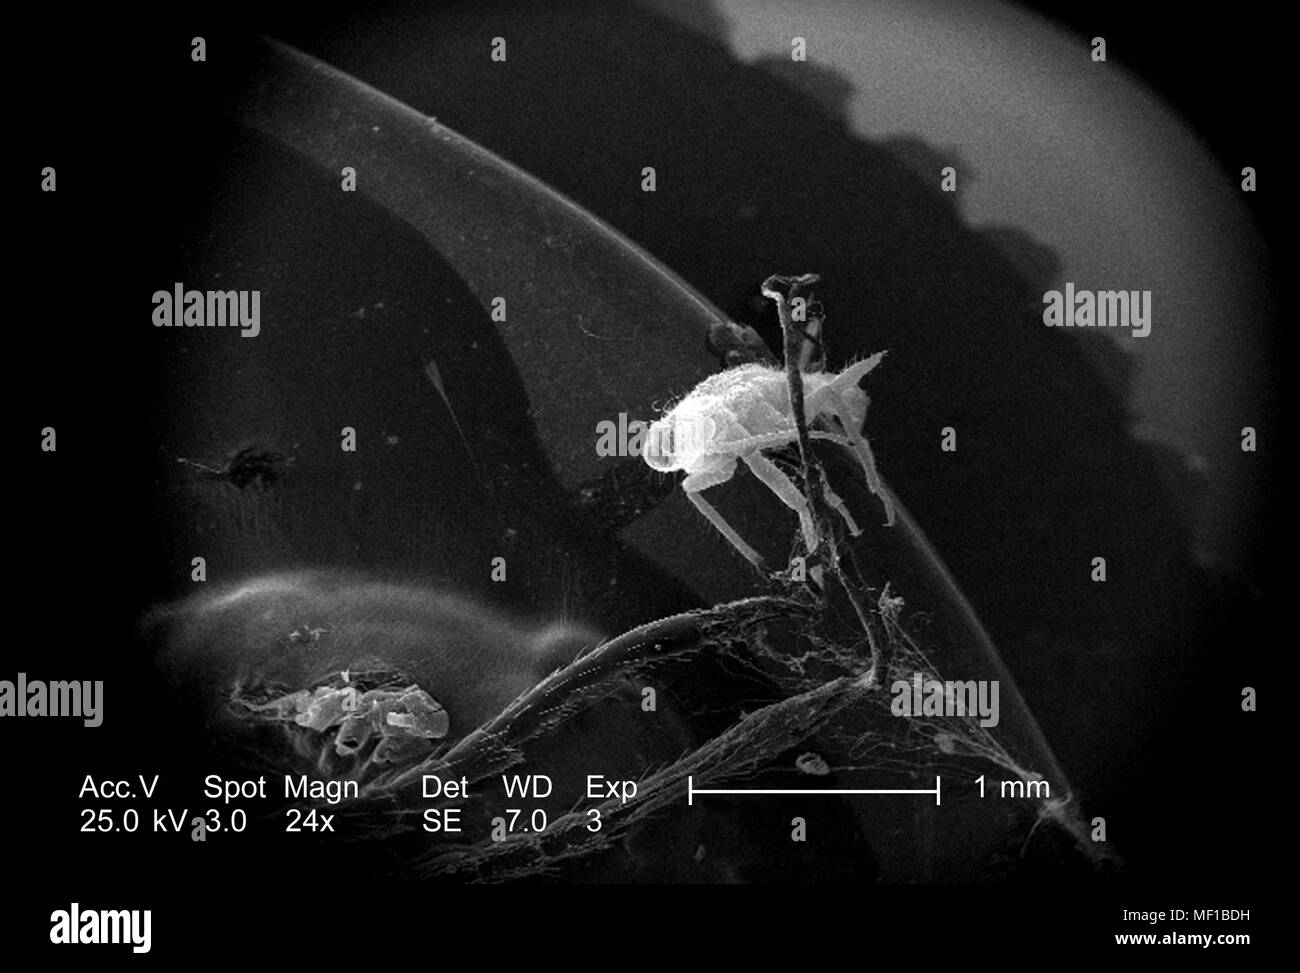 Presenza di un piccolo insetto non identificato su dragonfly exoskeletal superficie, ha rivelato nel 24x di scansione ingrandita al microscopio elettronico (SEM) immagine, 2005. Immagine cortesia di centri per il controllo delle malattie (CDC) / Janice Haney Carr, Connie fiori. () Foto Stock